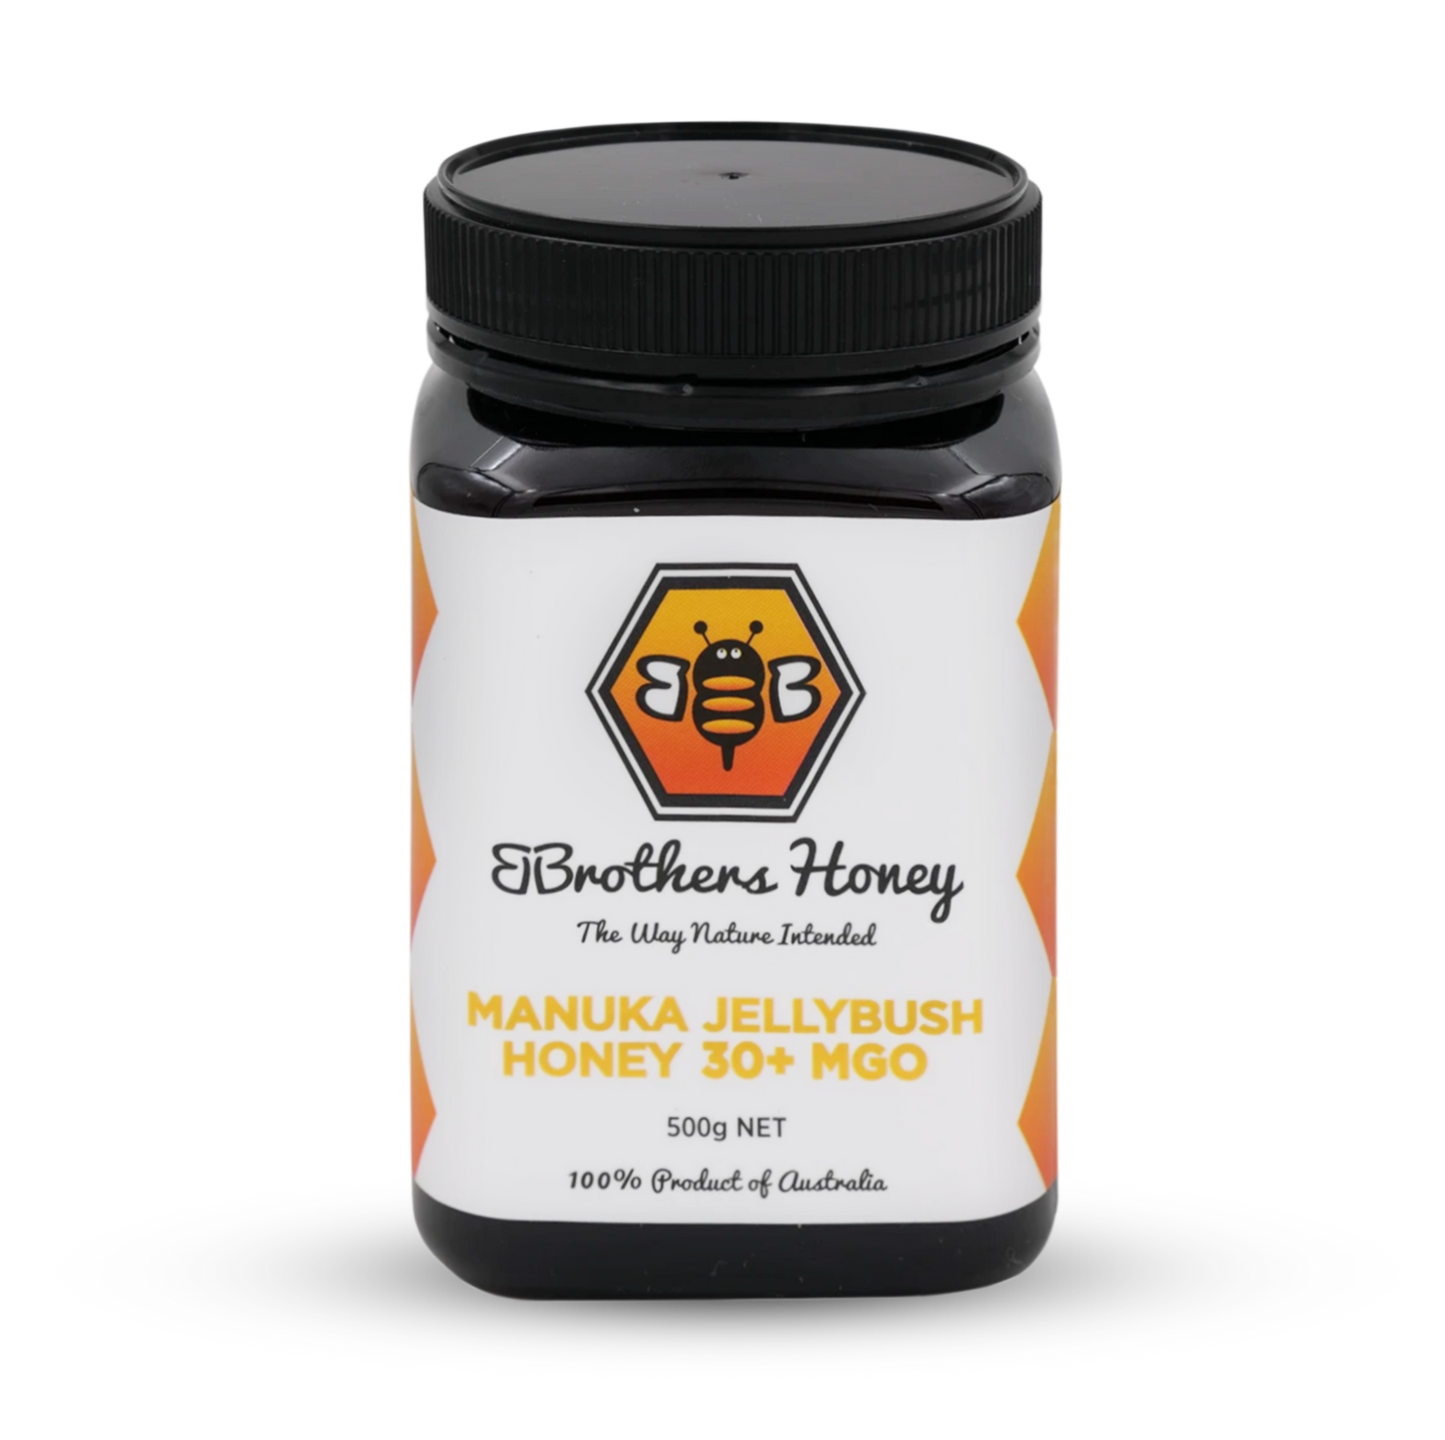 Manuka Honey 30+ MGO 500g